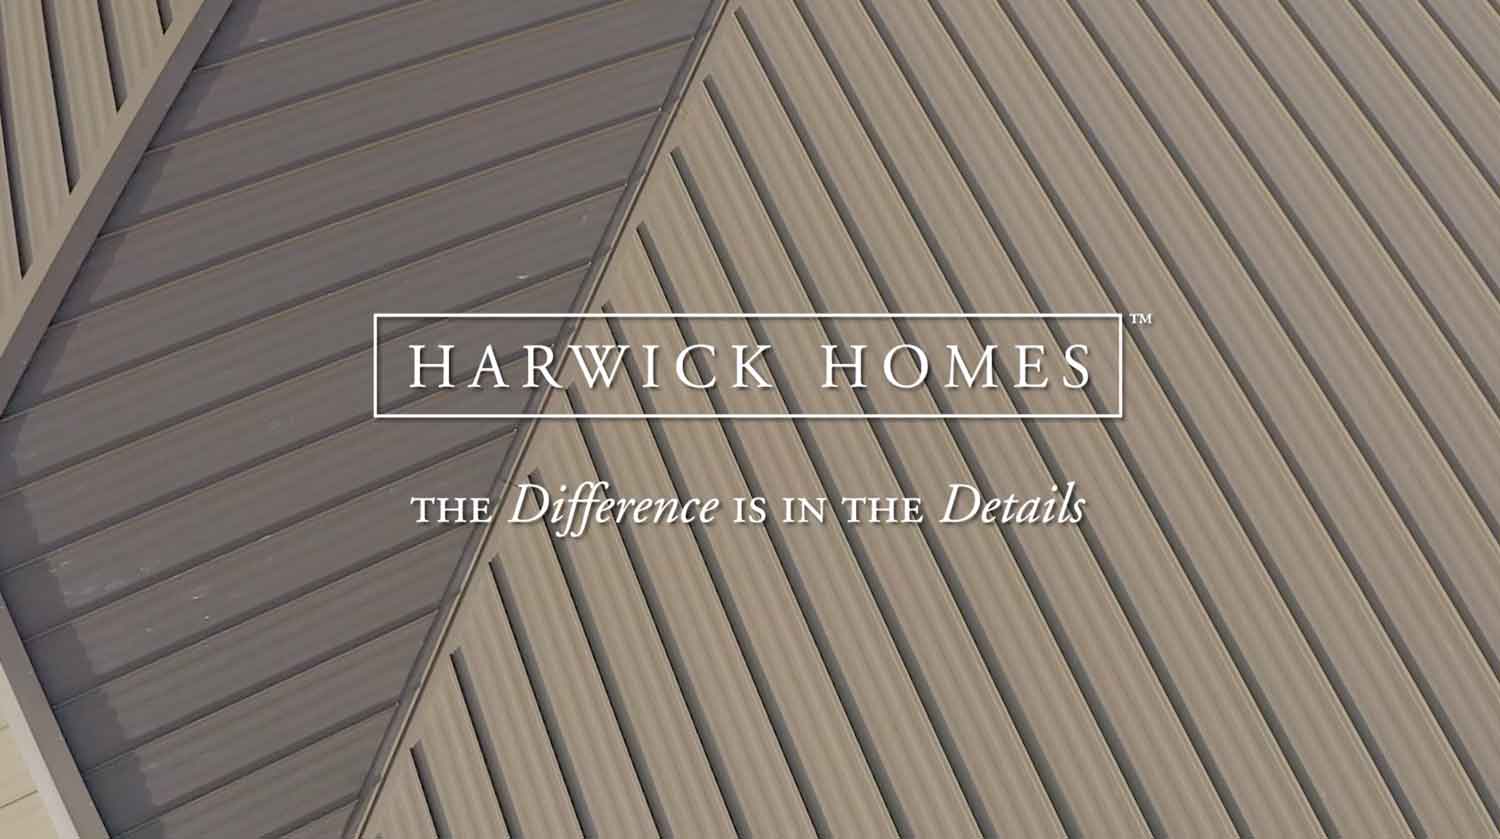 Harwick Homes Video showcase